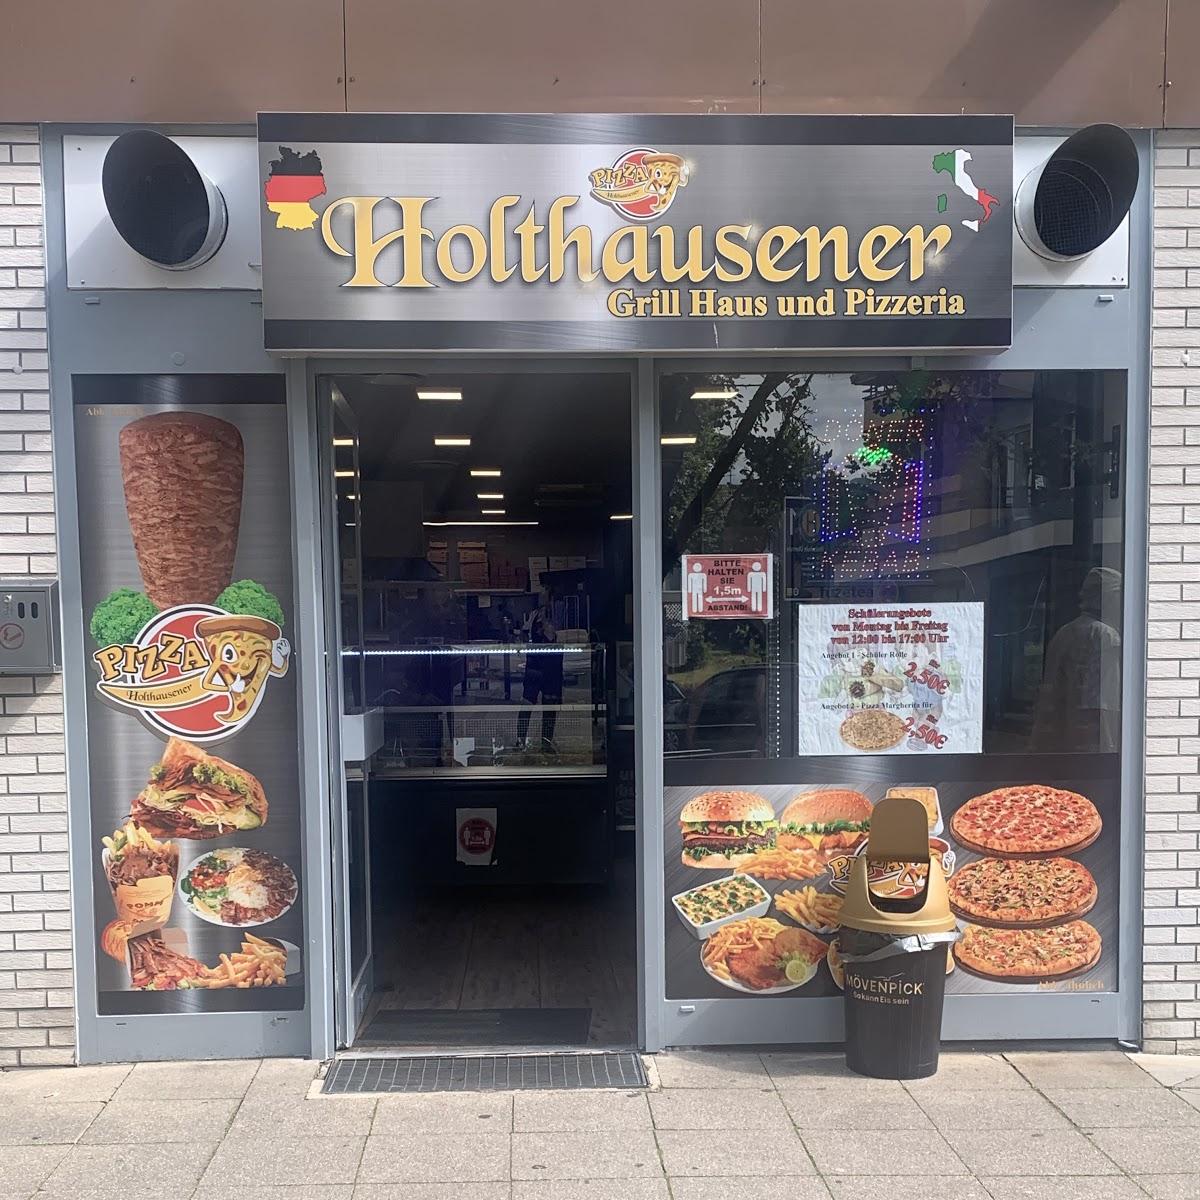 Restaurant "Holthausener Grill Haus und Pizzeria" in Essen